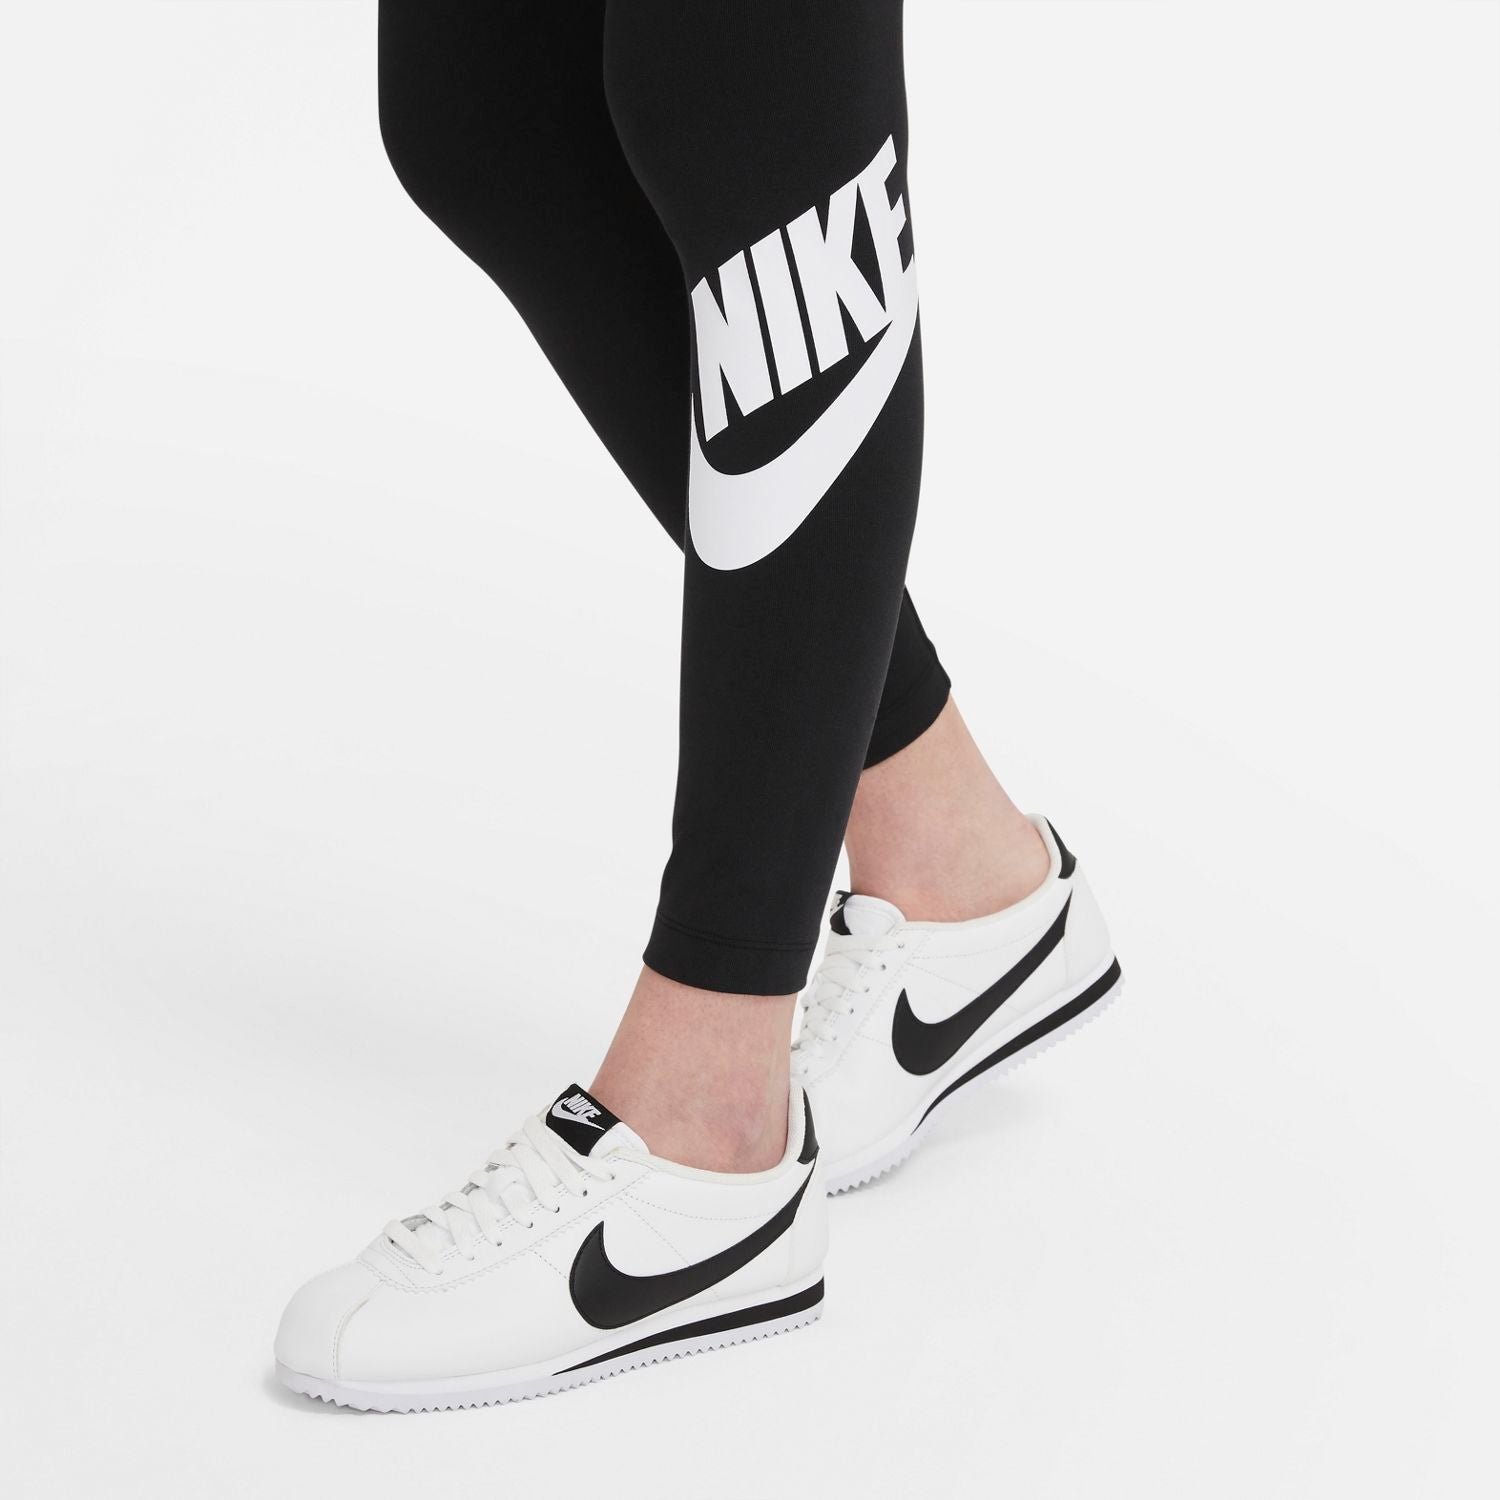 Nike Sportswear Swoosh Women's High-Waisted Leggings